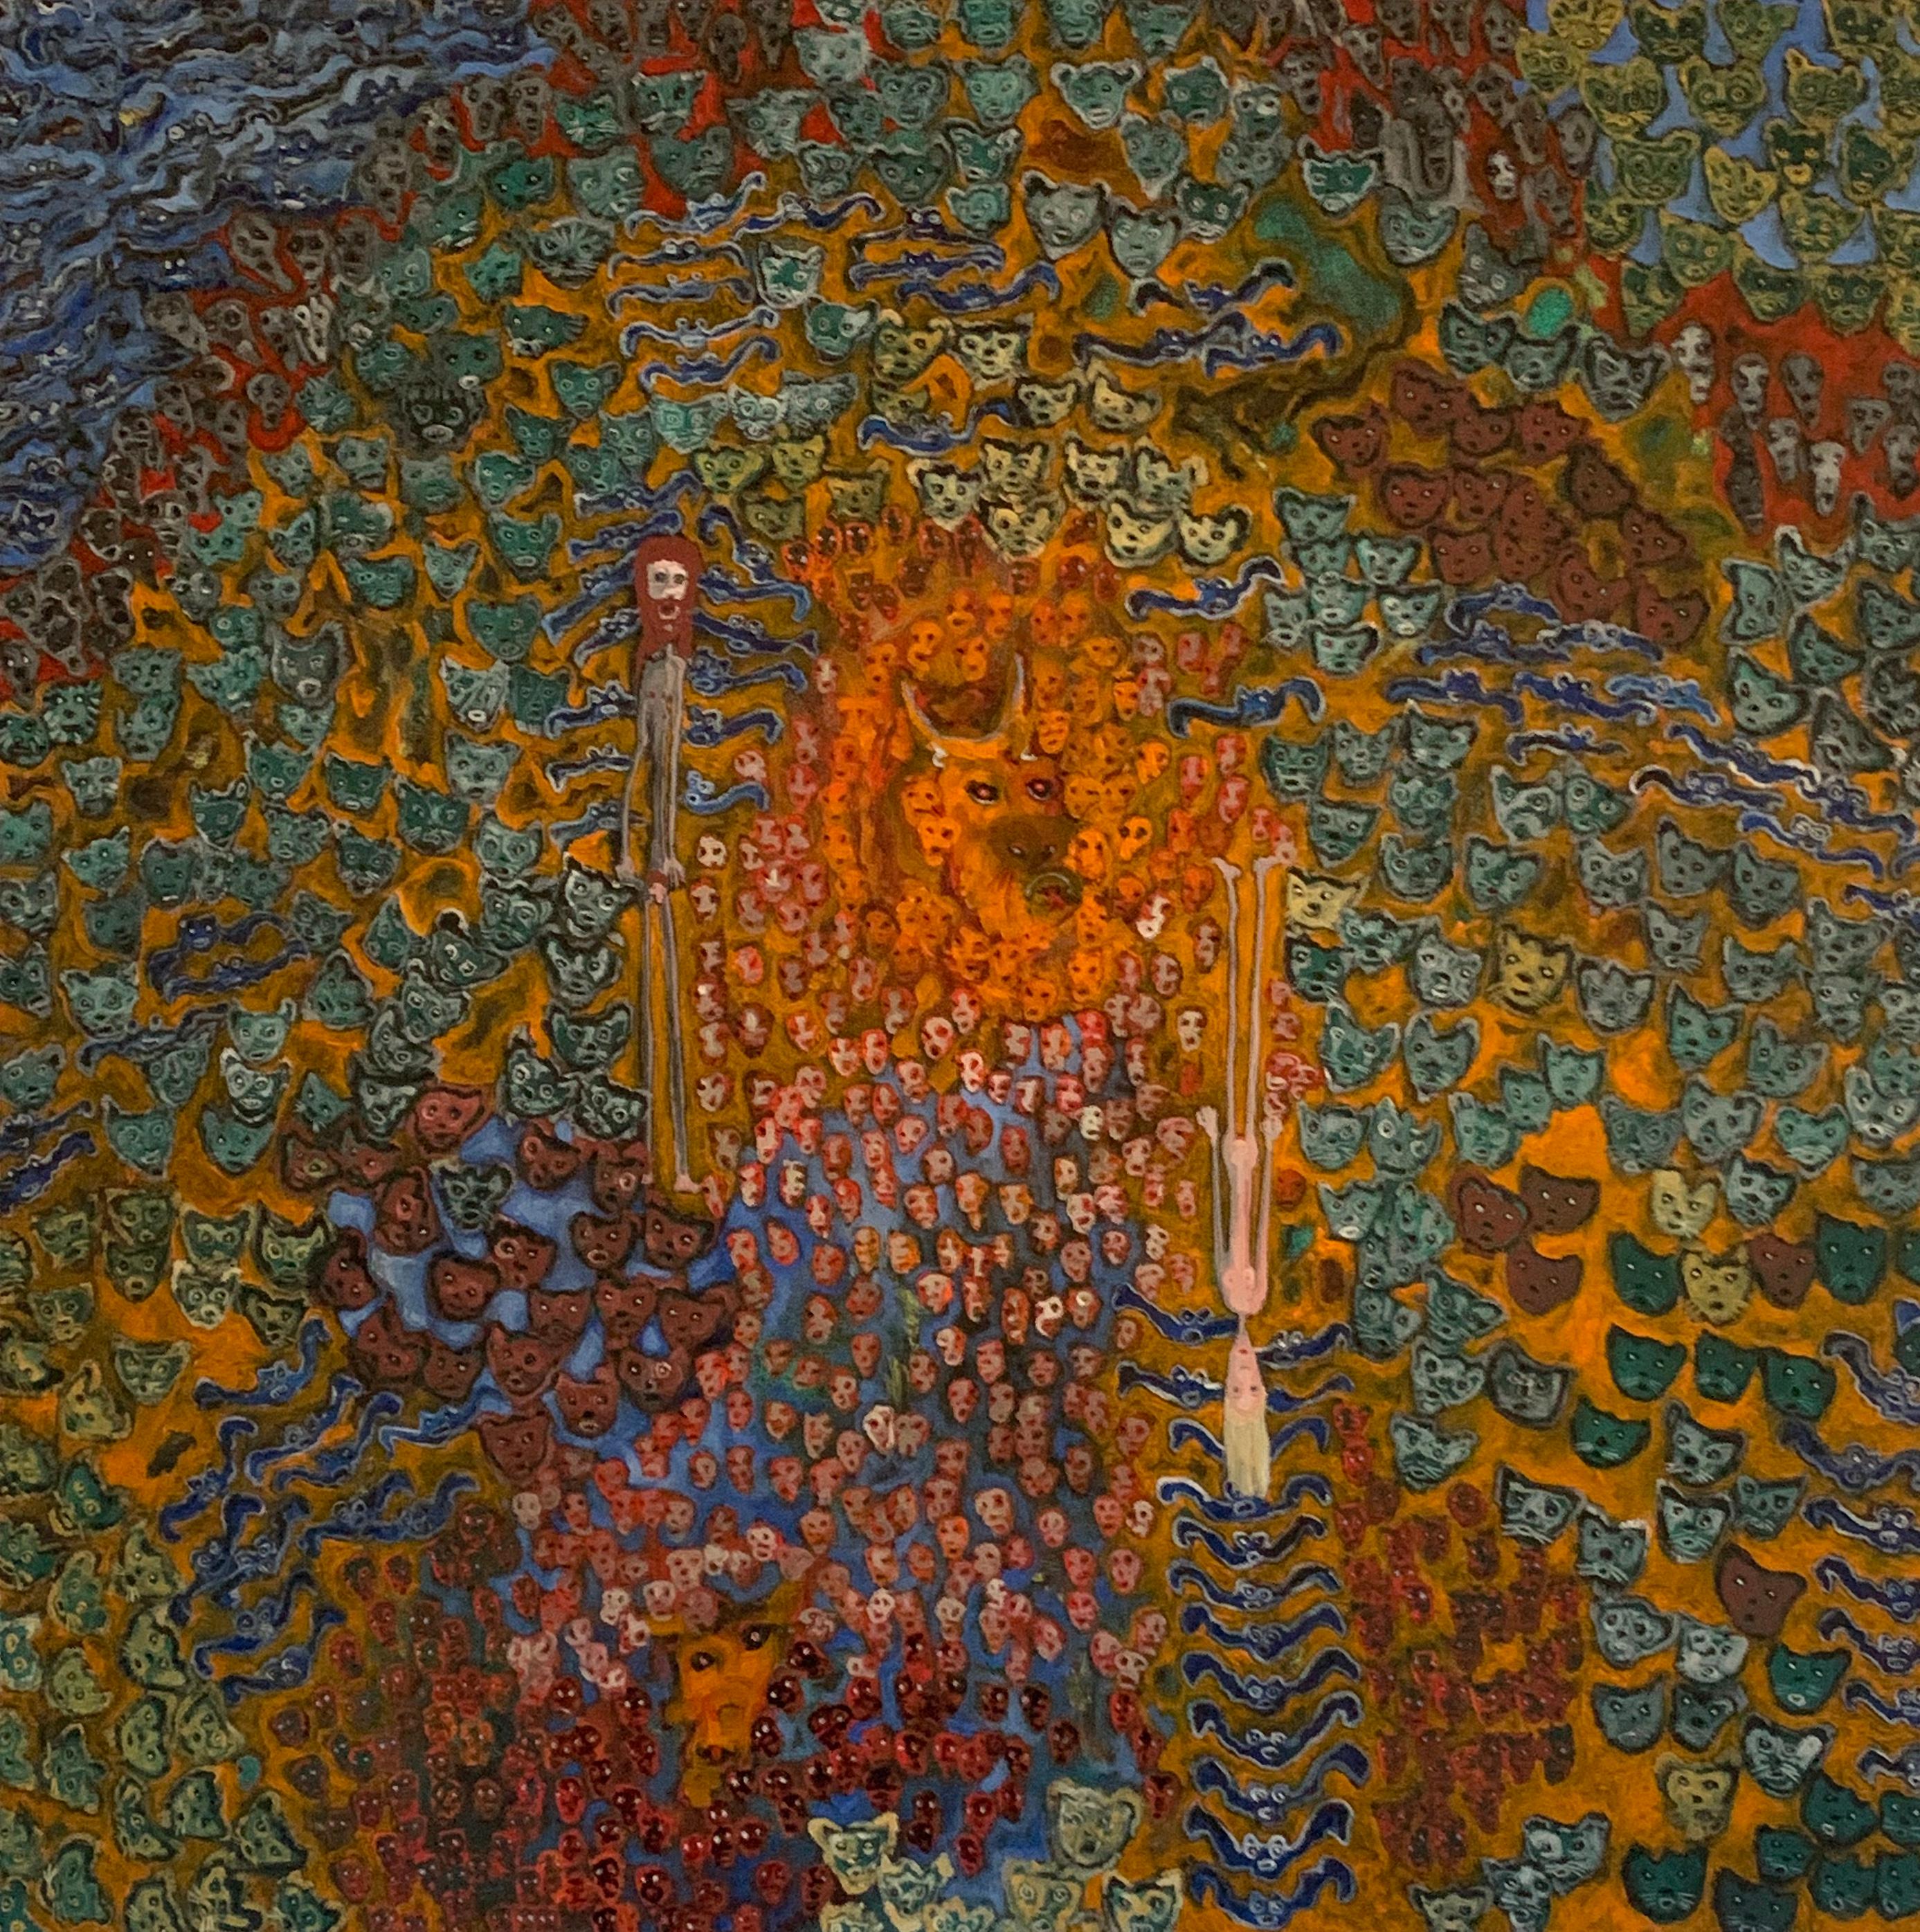 MIDNIGHT IN EDEN - Adam et Ève dans un jardin surréaliste de nuit - orange, bleu, brun - Painting de Constantin Werner